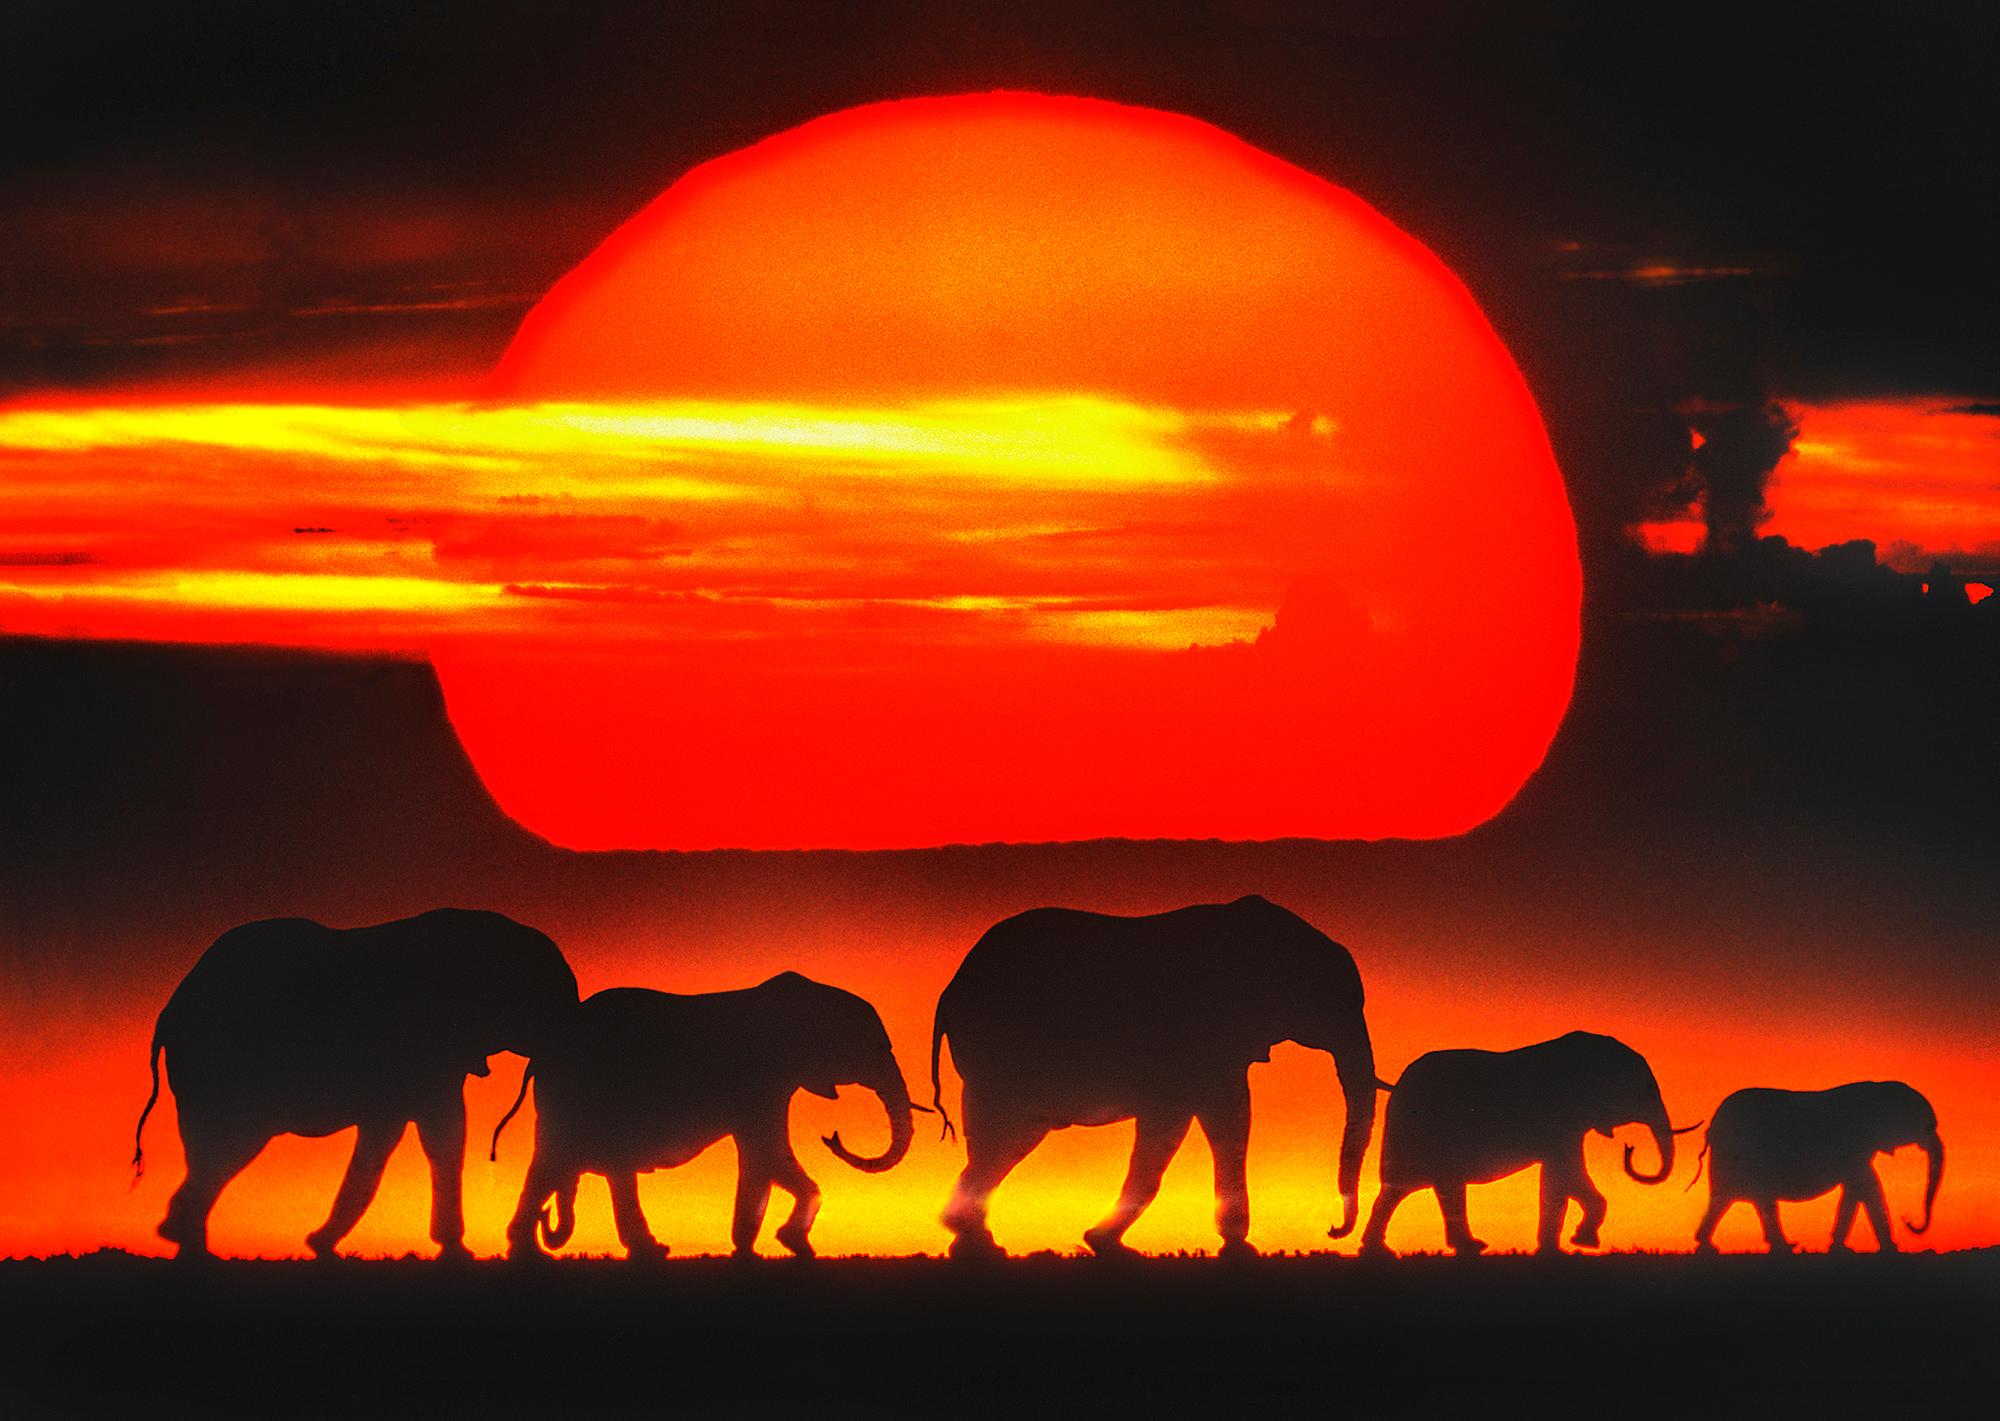 Mitchell Funk Landscape Photograph – Heard von Elefanten auf afrikanischem Plane bei Sonnenuntergang